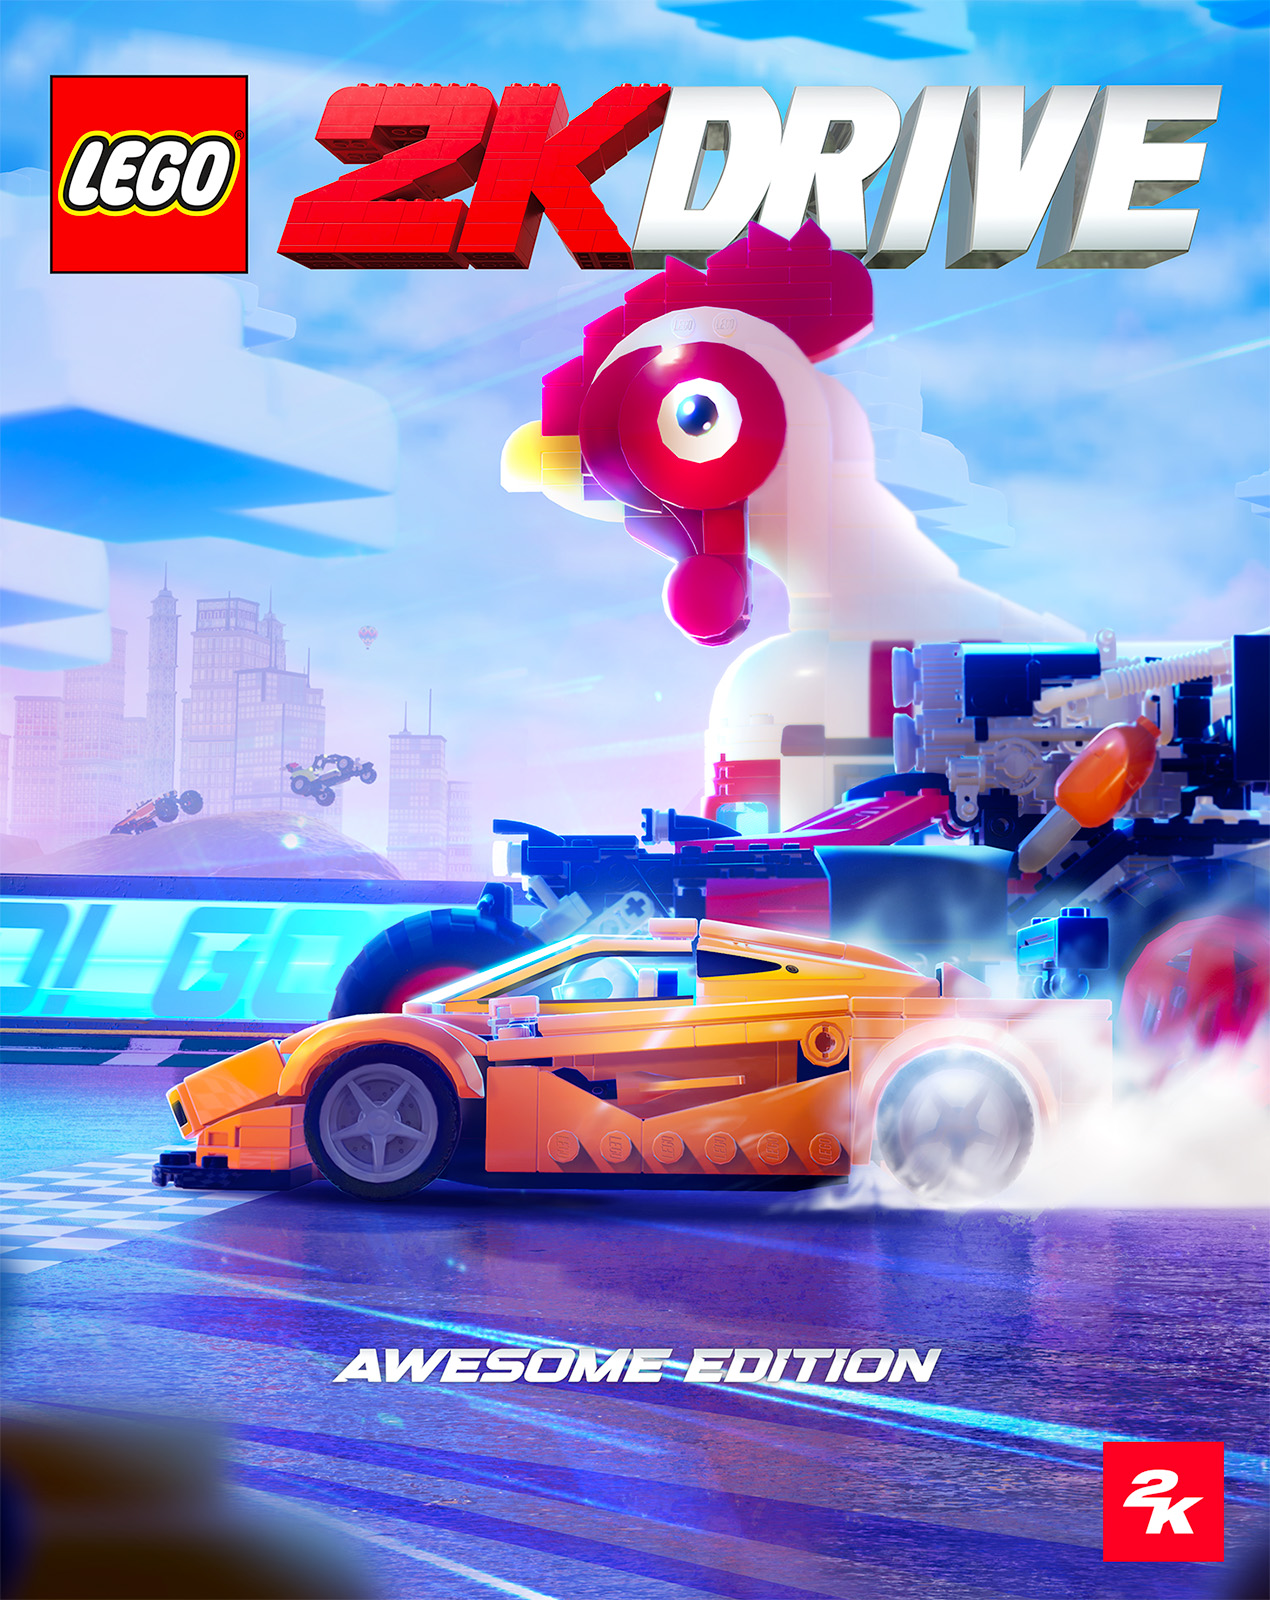 LEGO 2K Drive: Das nächste LEGO-Videospiel wird für den 19. Mai 2023 angekündigt